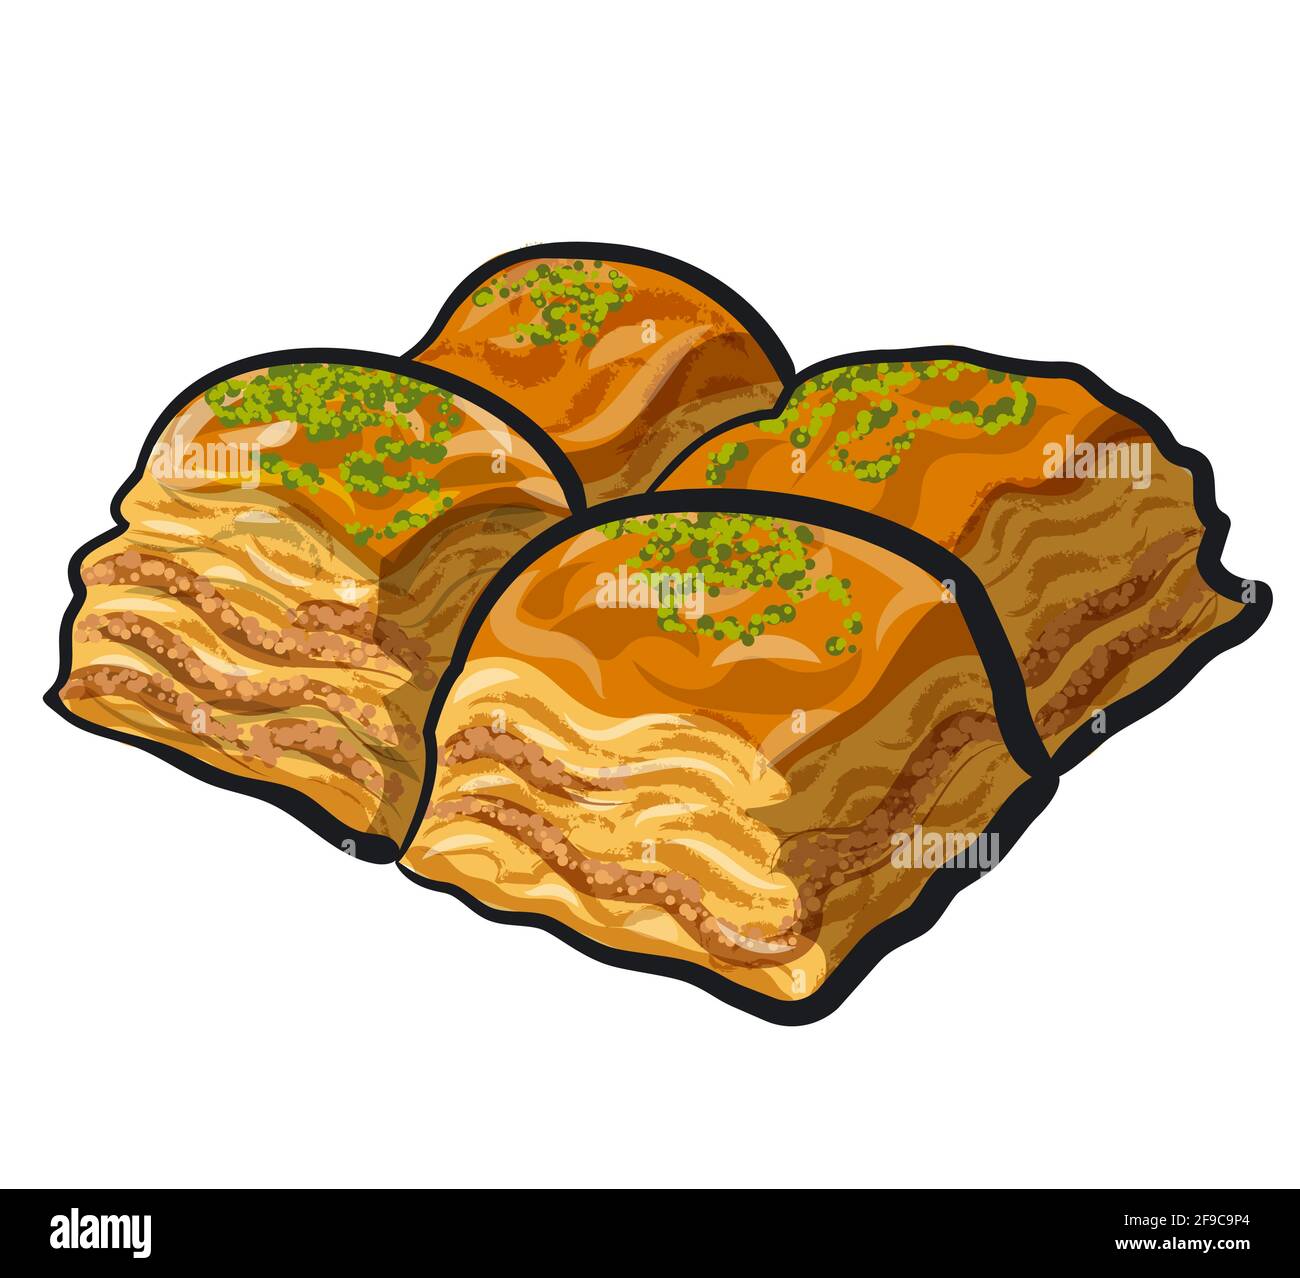 Ilustración de alimentos dulces orientales postre baklava Ilustración del Vector